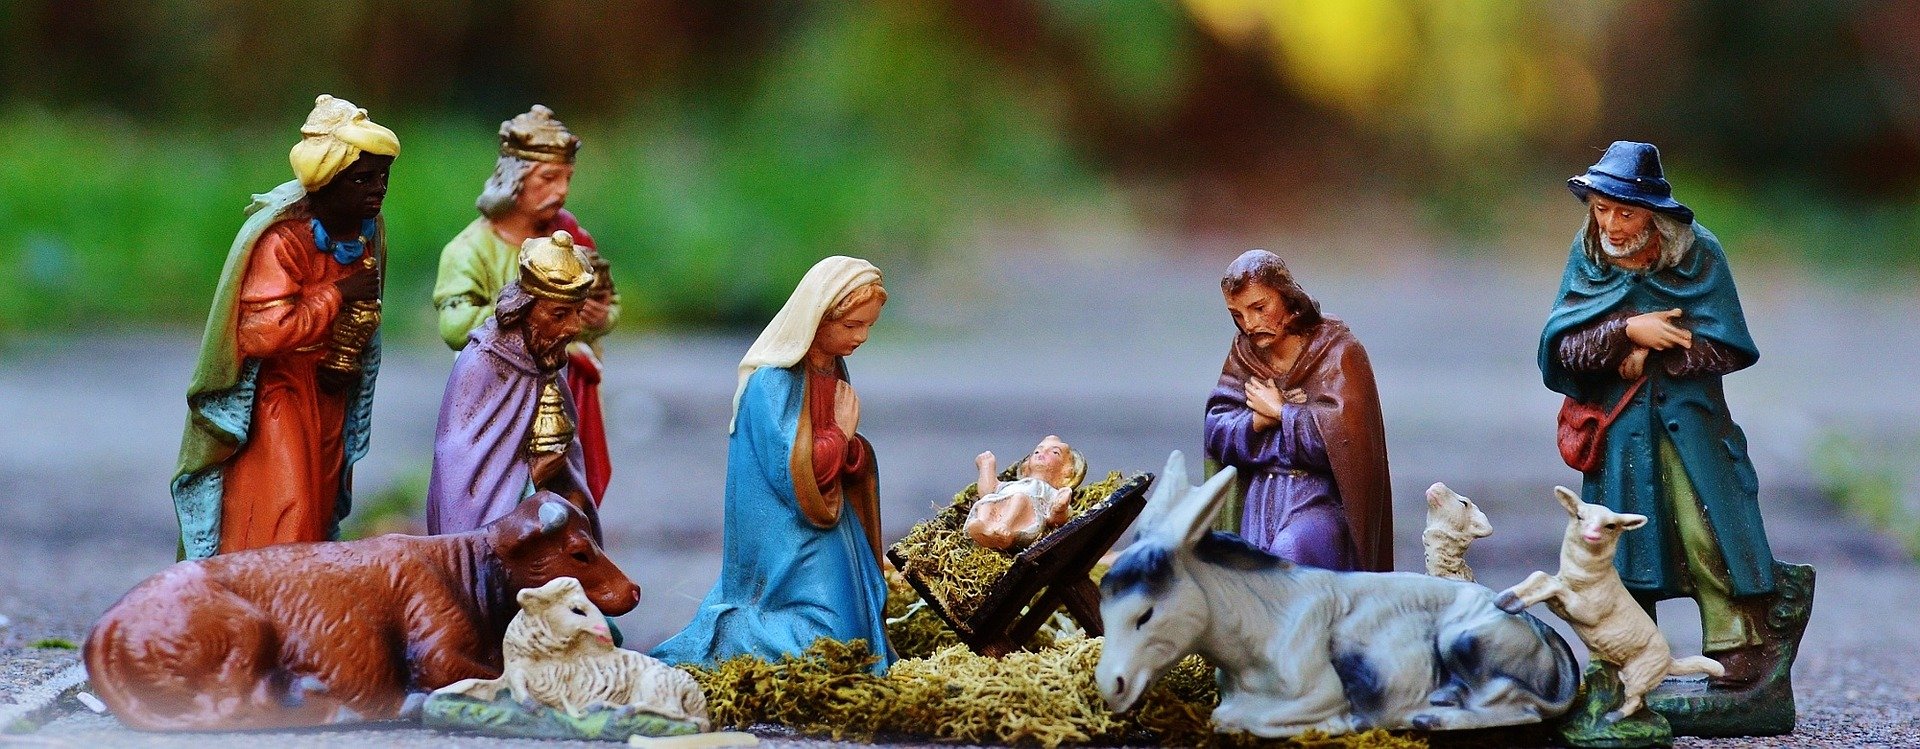 Significado do Natal: Amor e união em família | SJO Artigos Religiosos